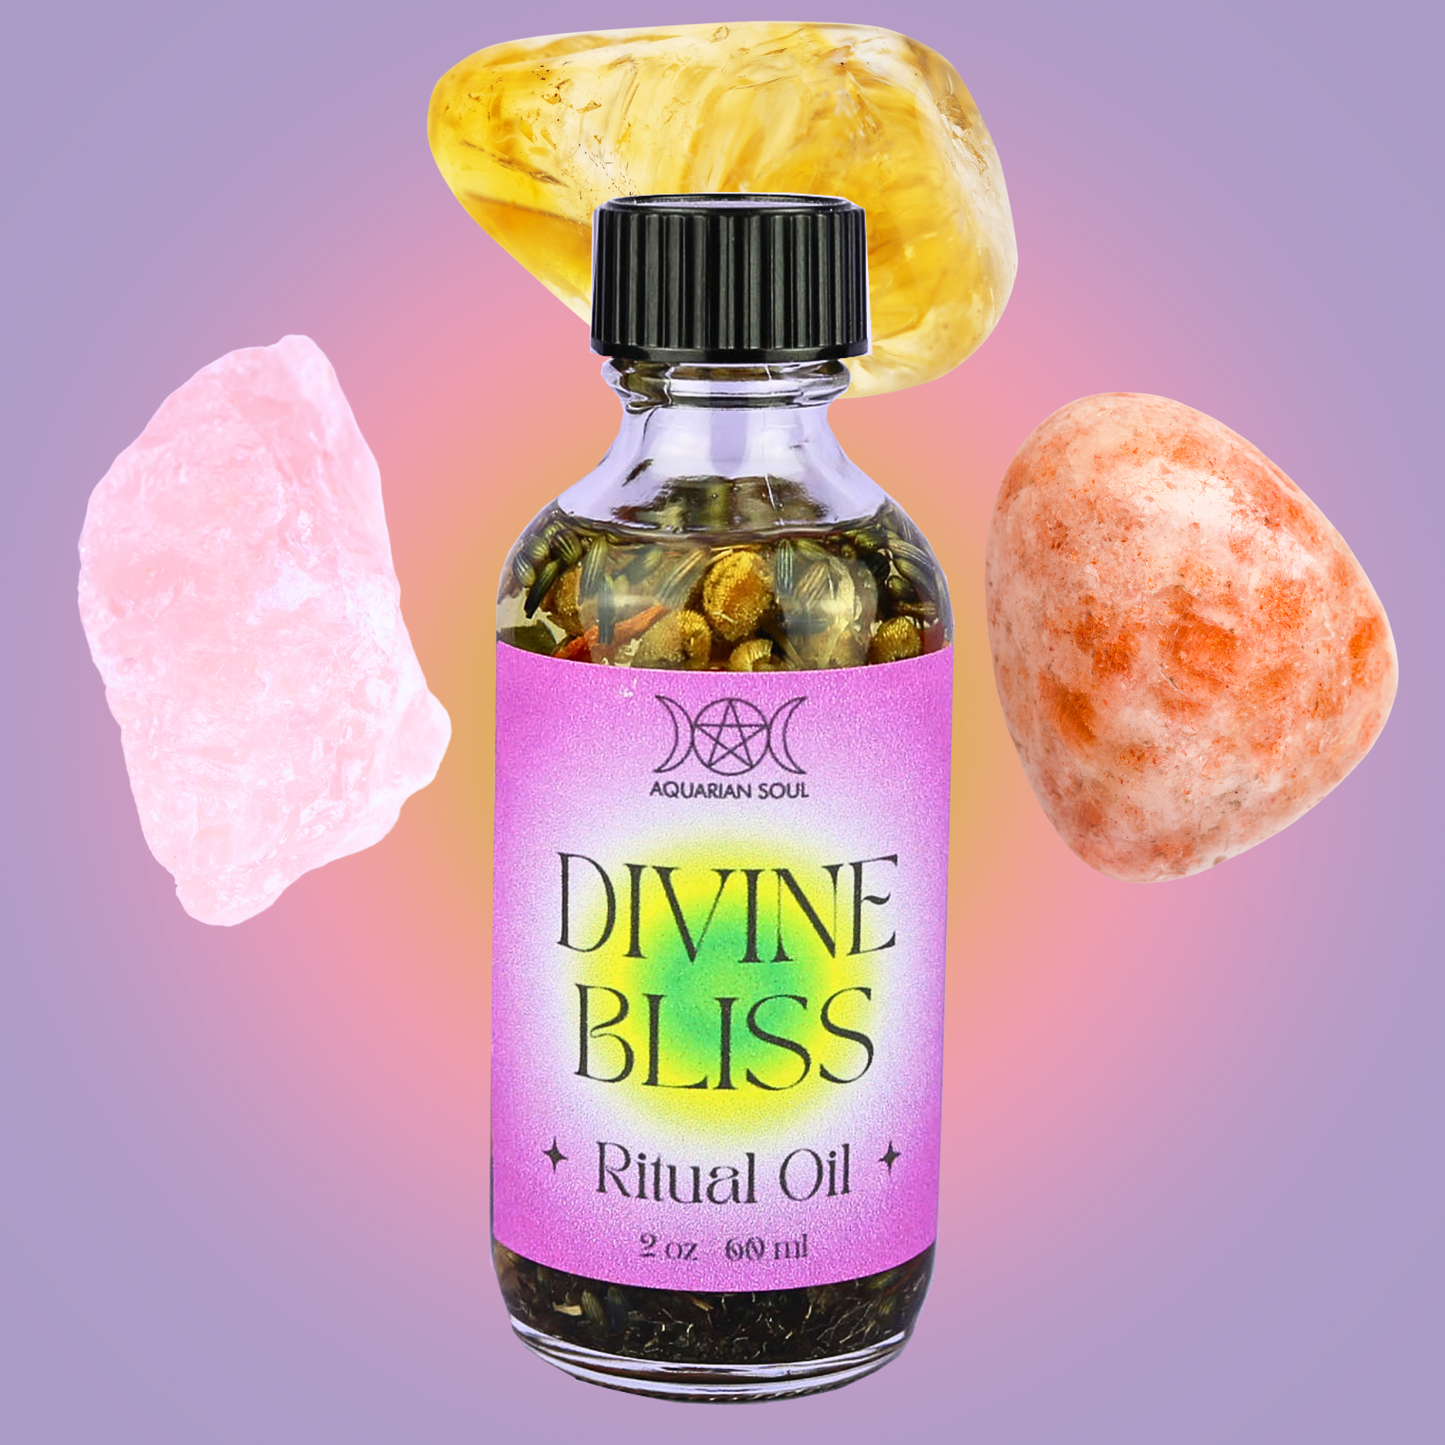 Divine Bliss Ritual Oil